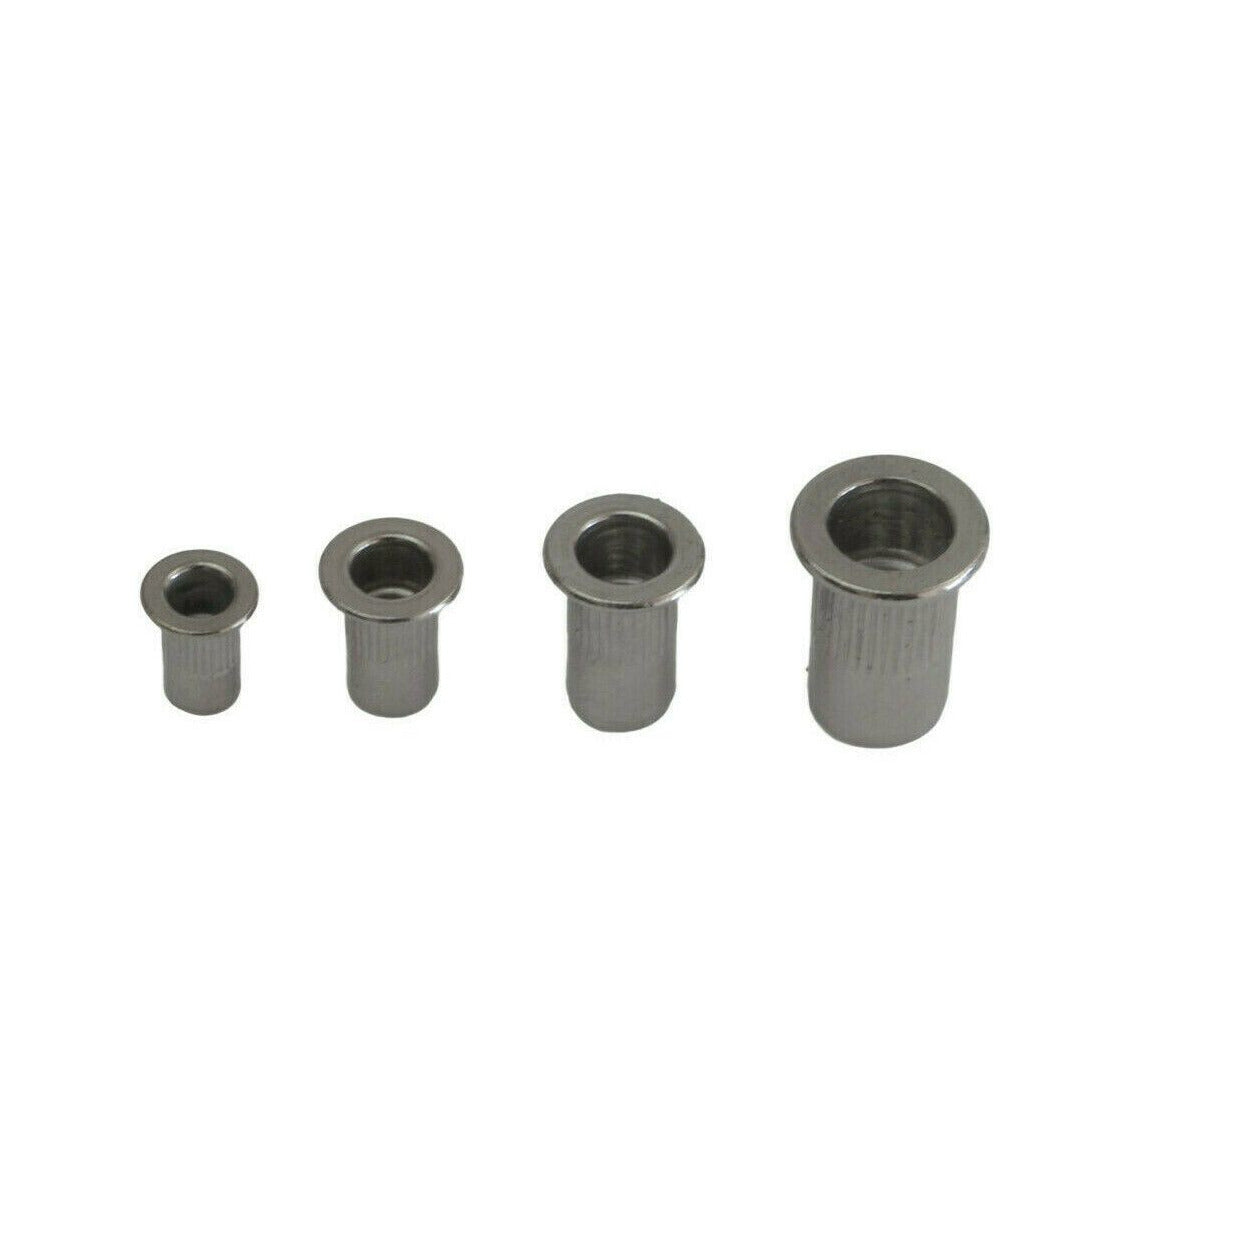 304 Stainless Steel Metric Nutserts 120 pc Rivet Nuts Rivnuts M 3 4 5 6 8 10